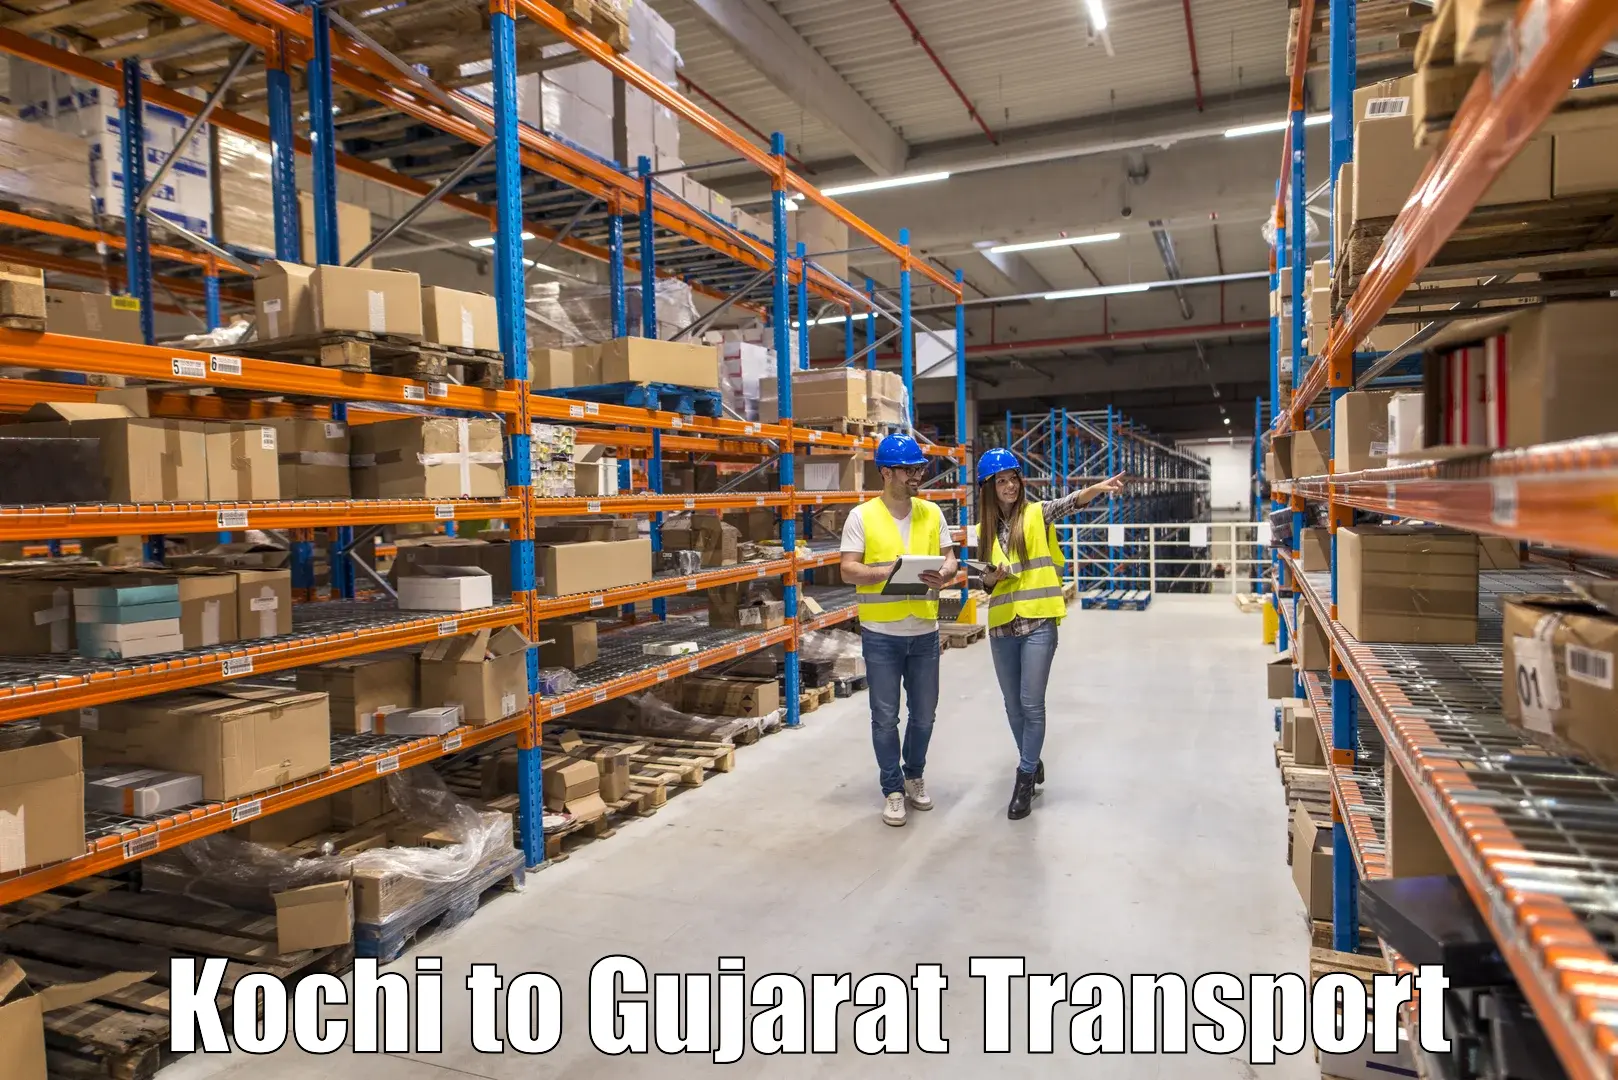 Road transport services Kochi to Vatadara